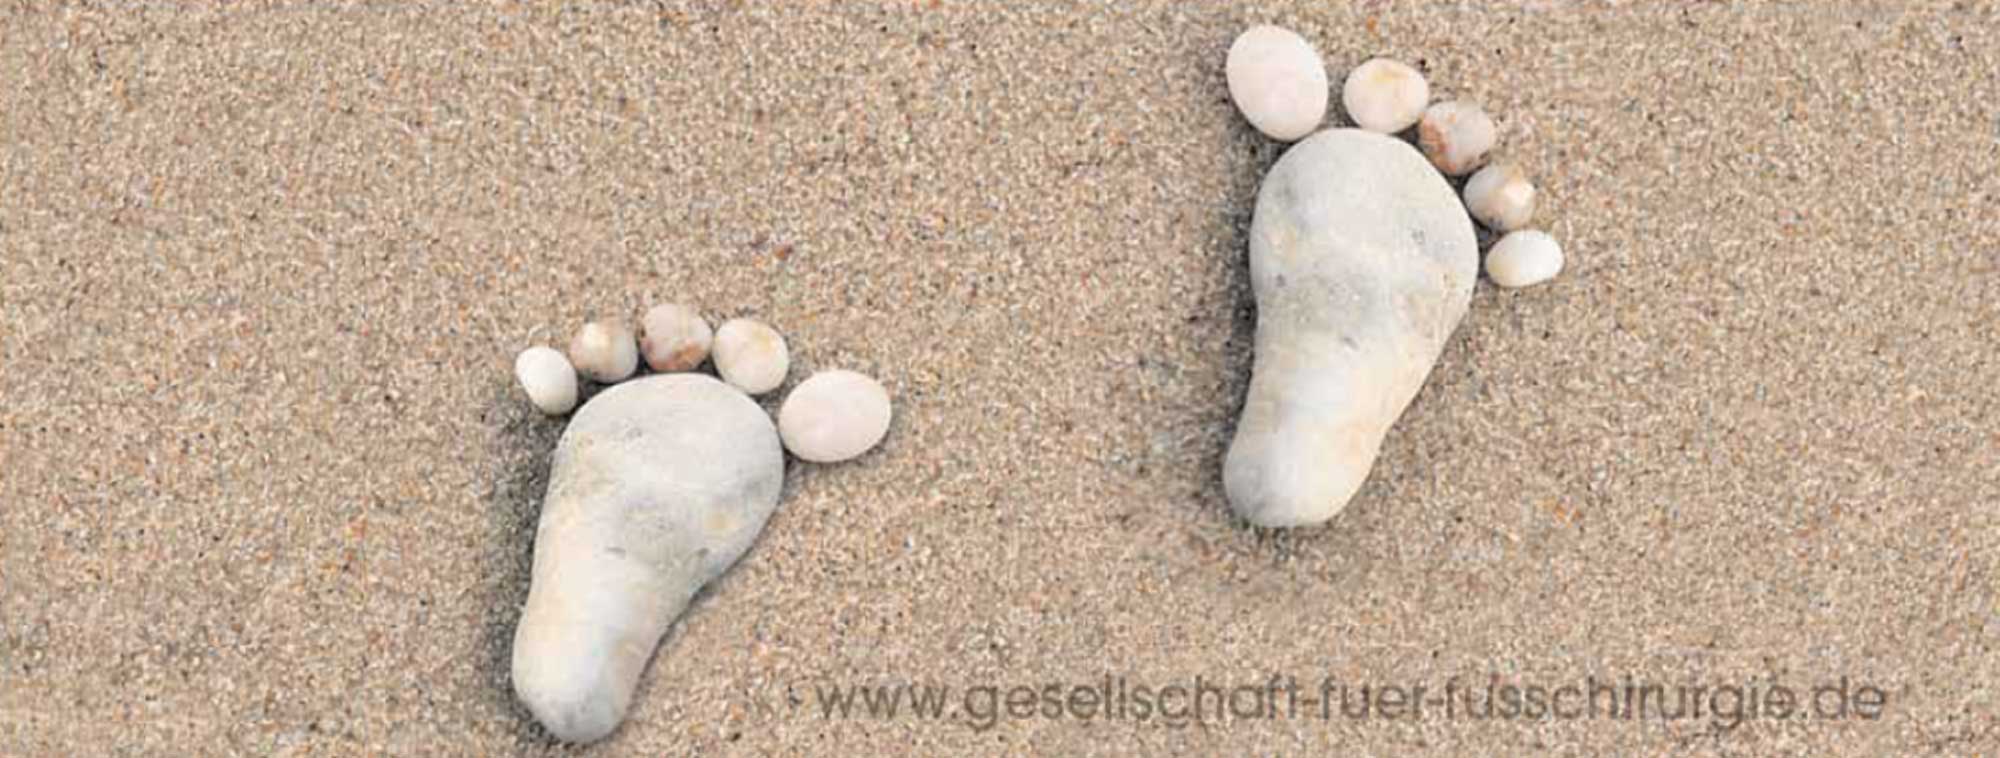 Zwei mit Steinen gelegte Fußabdrücke auf Sand